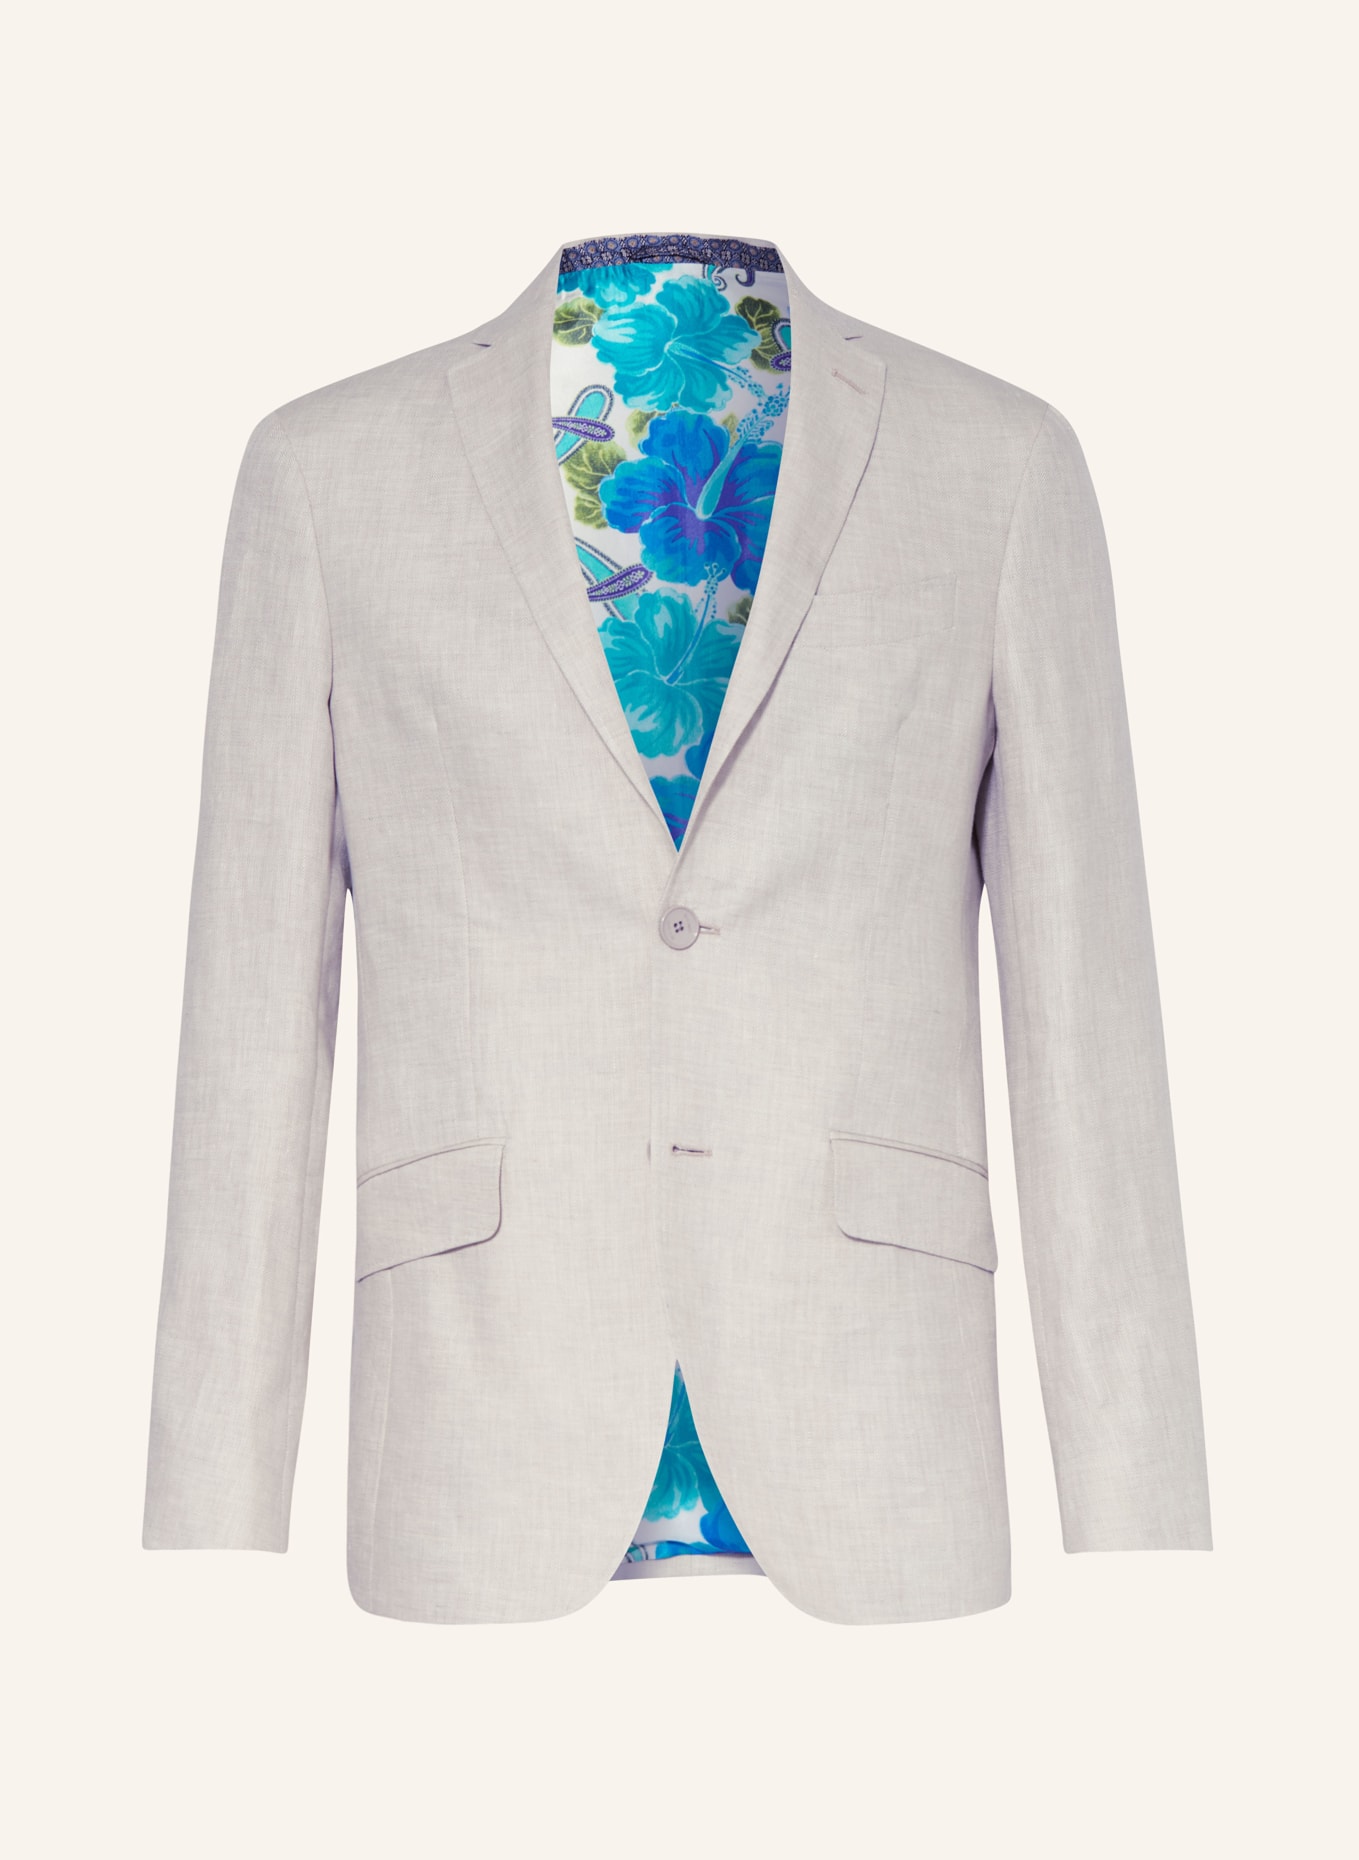 ETRO Suit jacket slim fit in linen, Color: M0633 Light Beige (Image 1)